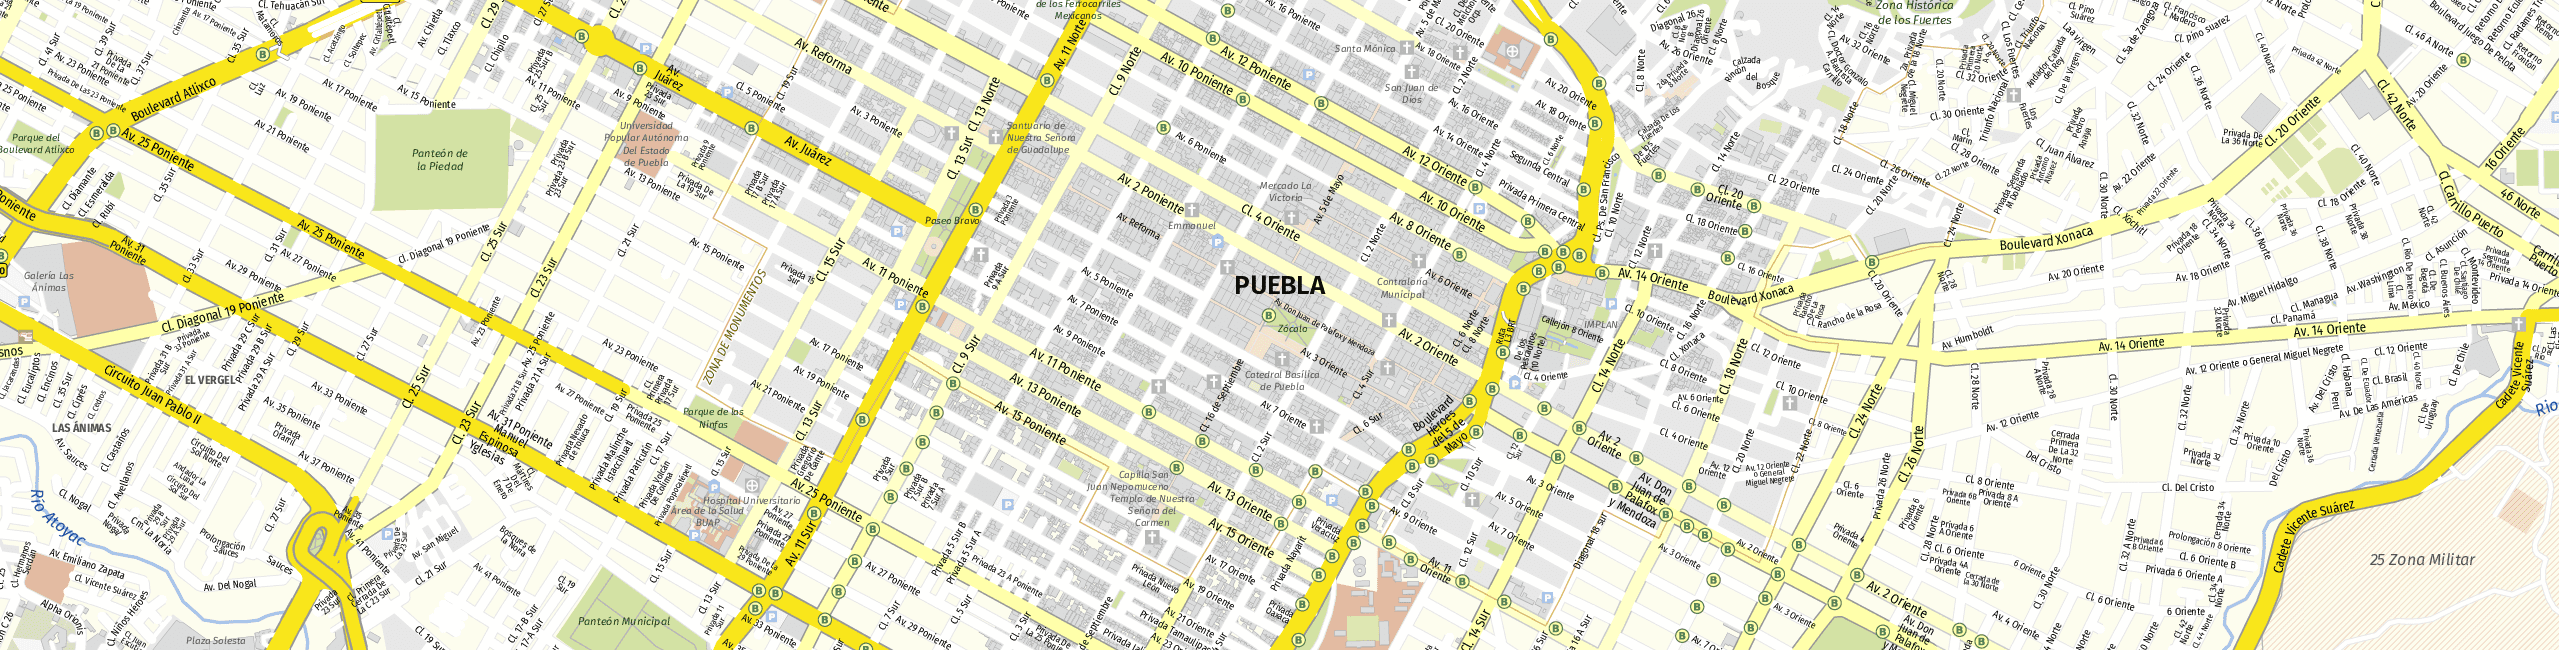 Stadtplan Puebla de Zaragoza zum Downloaden.